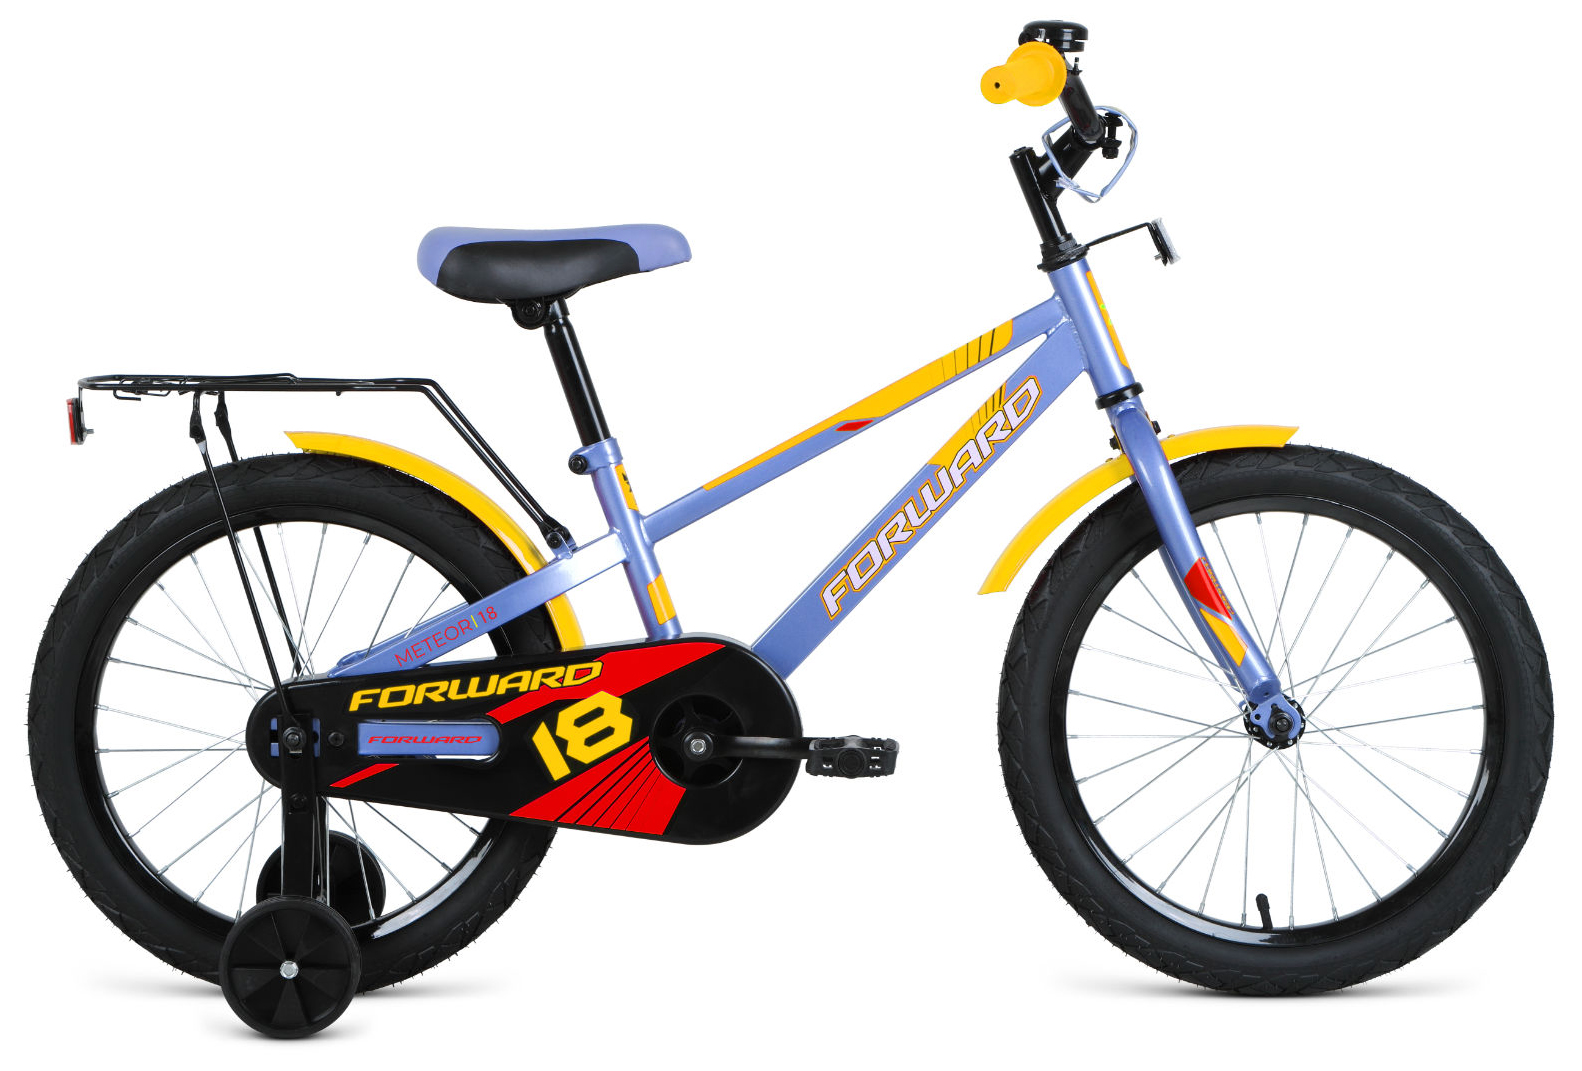  Отзывы о Детском велосипеде Forward Meteor 18 (2021) 2021